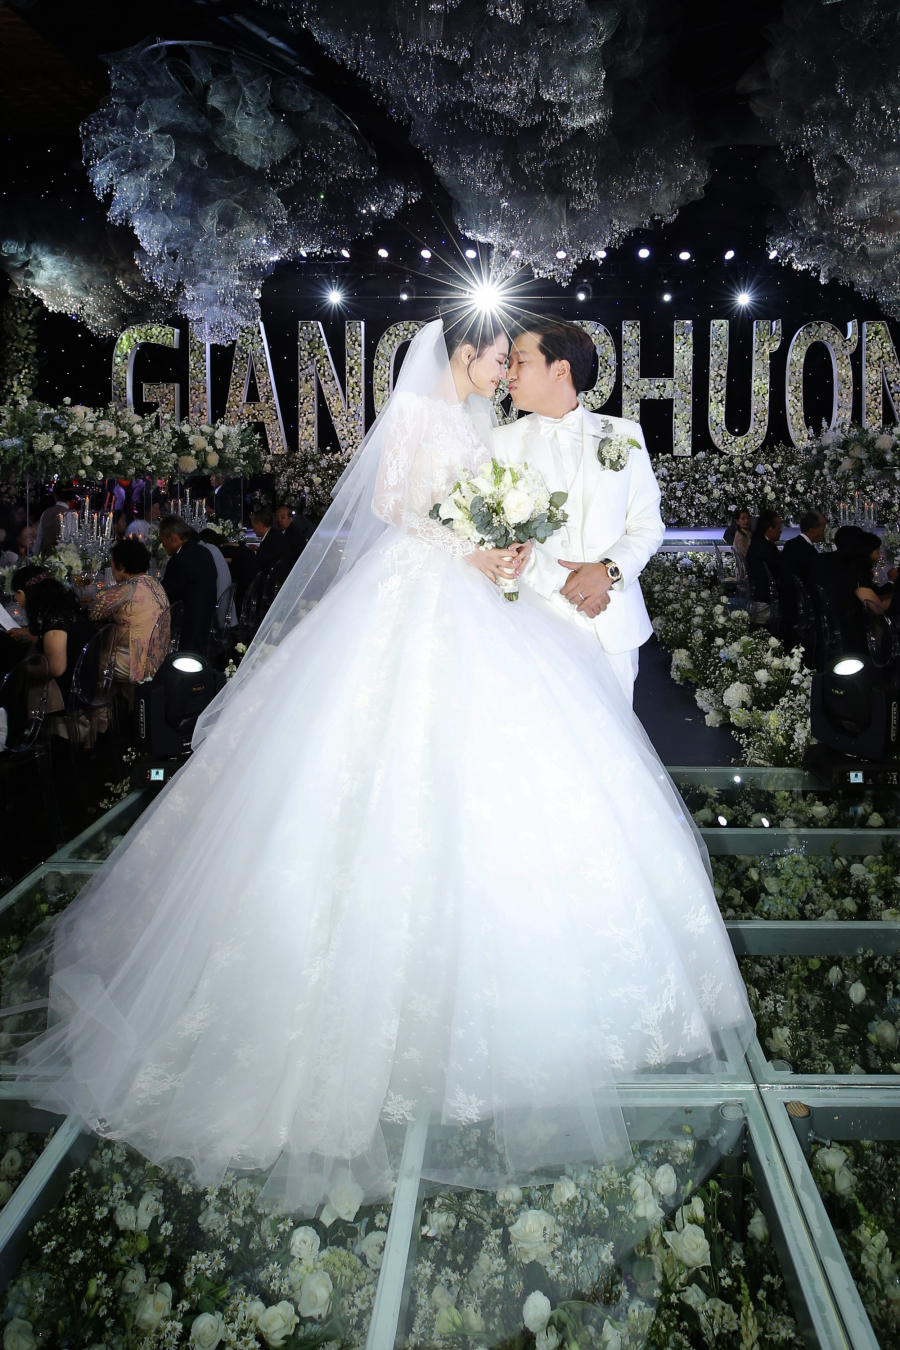 Hình ảnh đáng nhớ trong đám cưới được mong đợi nhất showbiz của Trường Giang - Nhã Phương hôm 25/9 vừa qua.